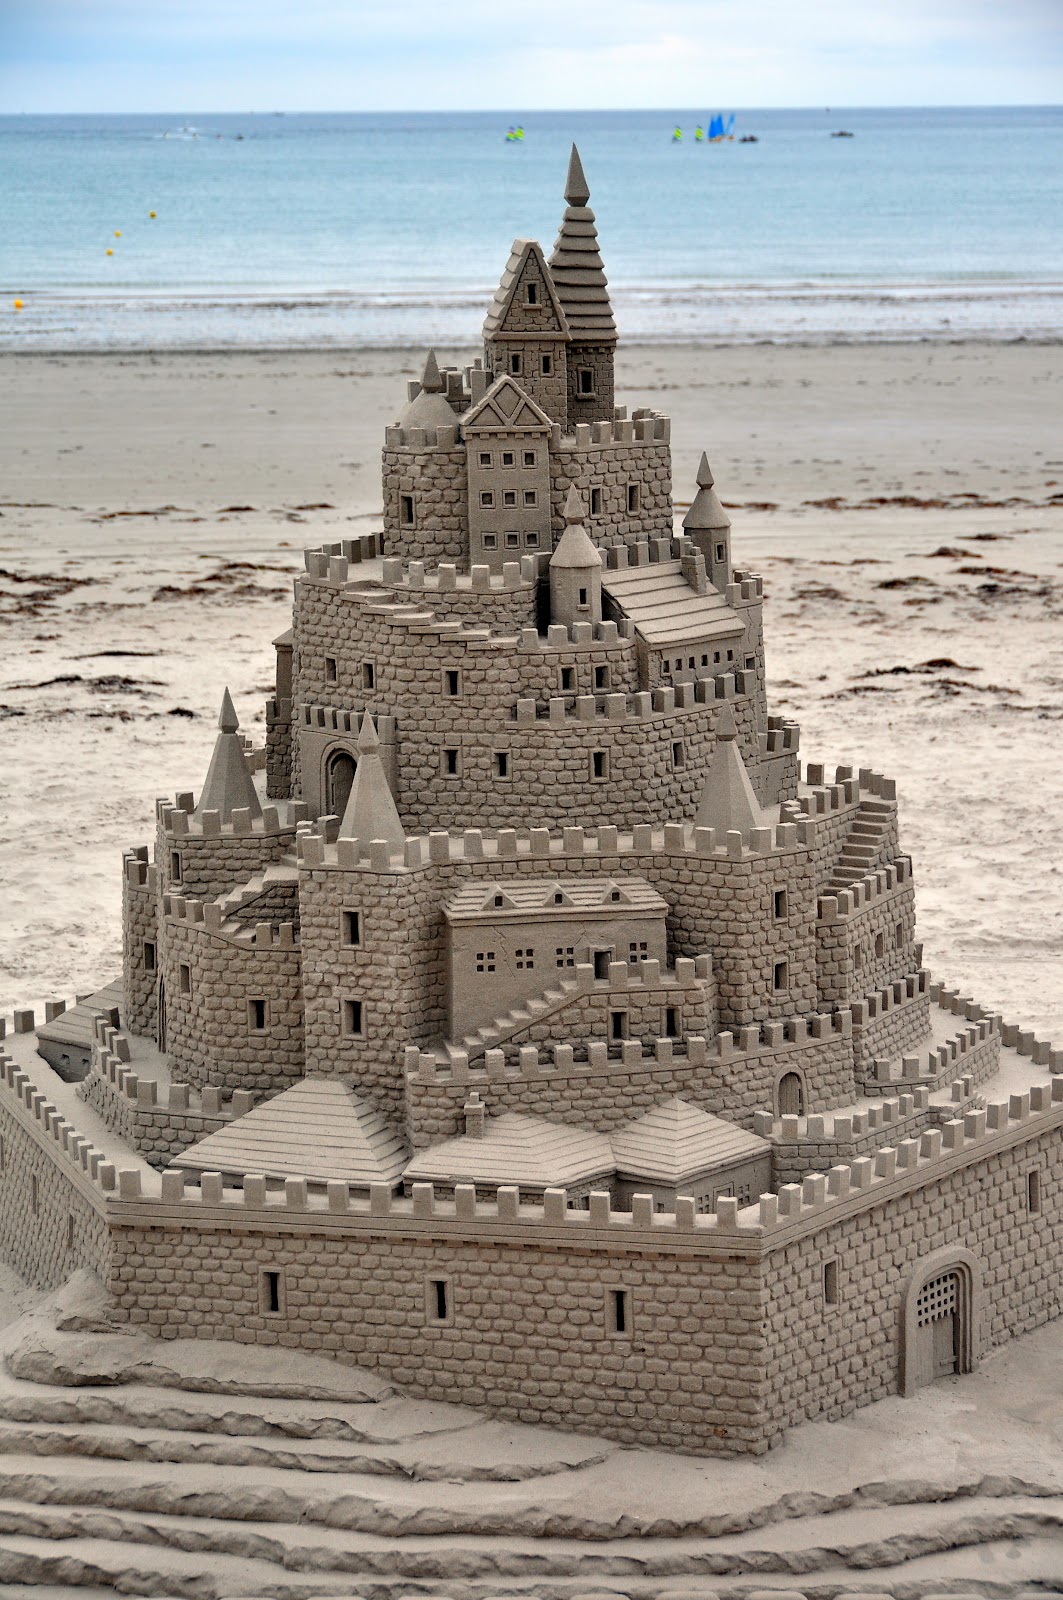 Amazing Sand Castles - Wonderful